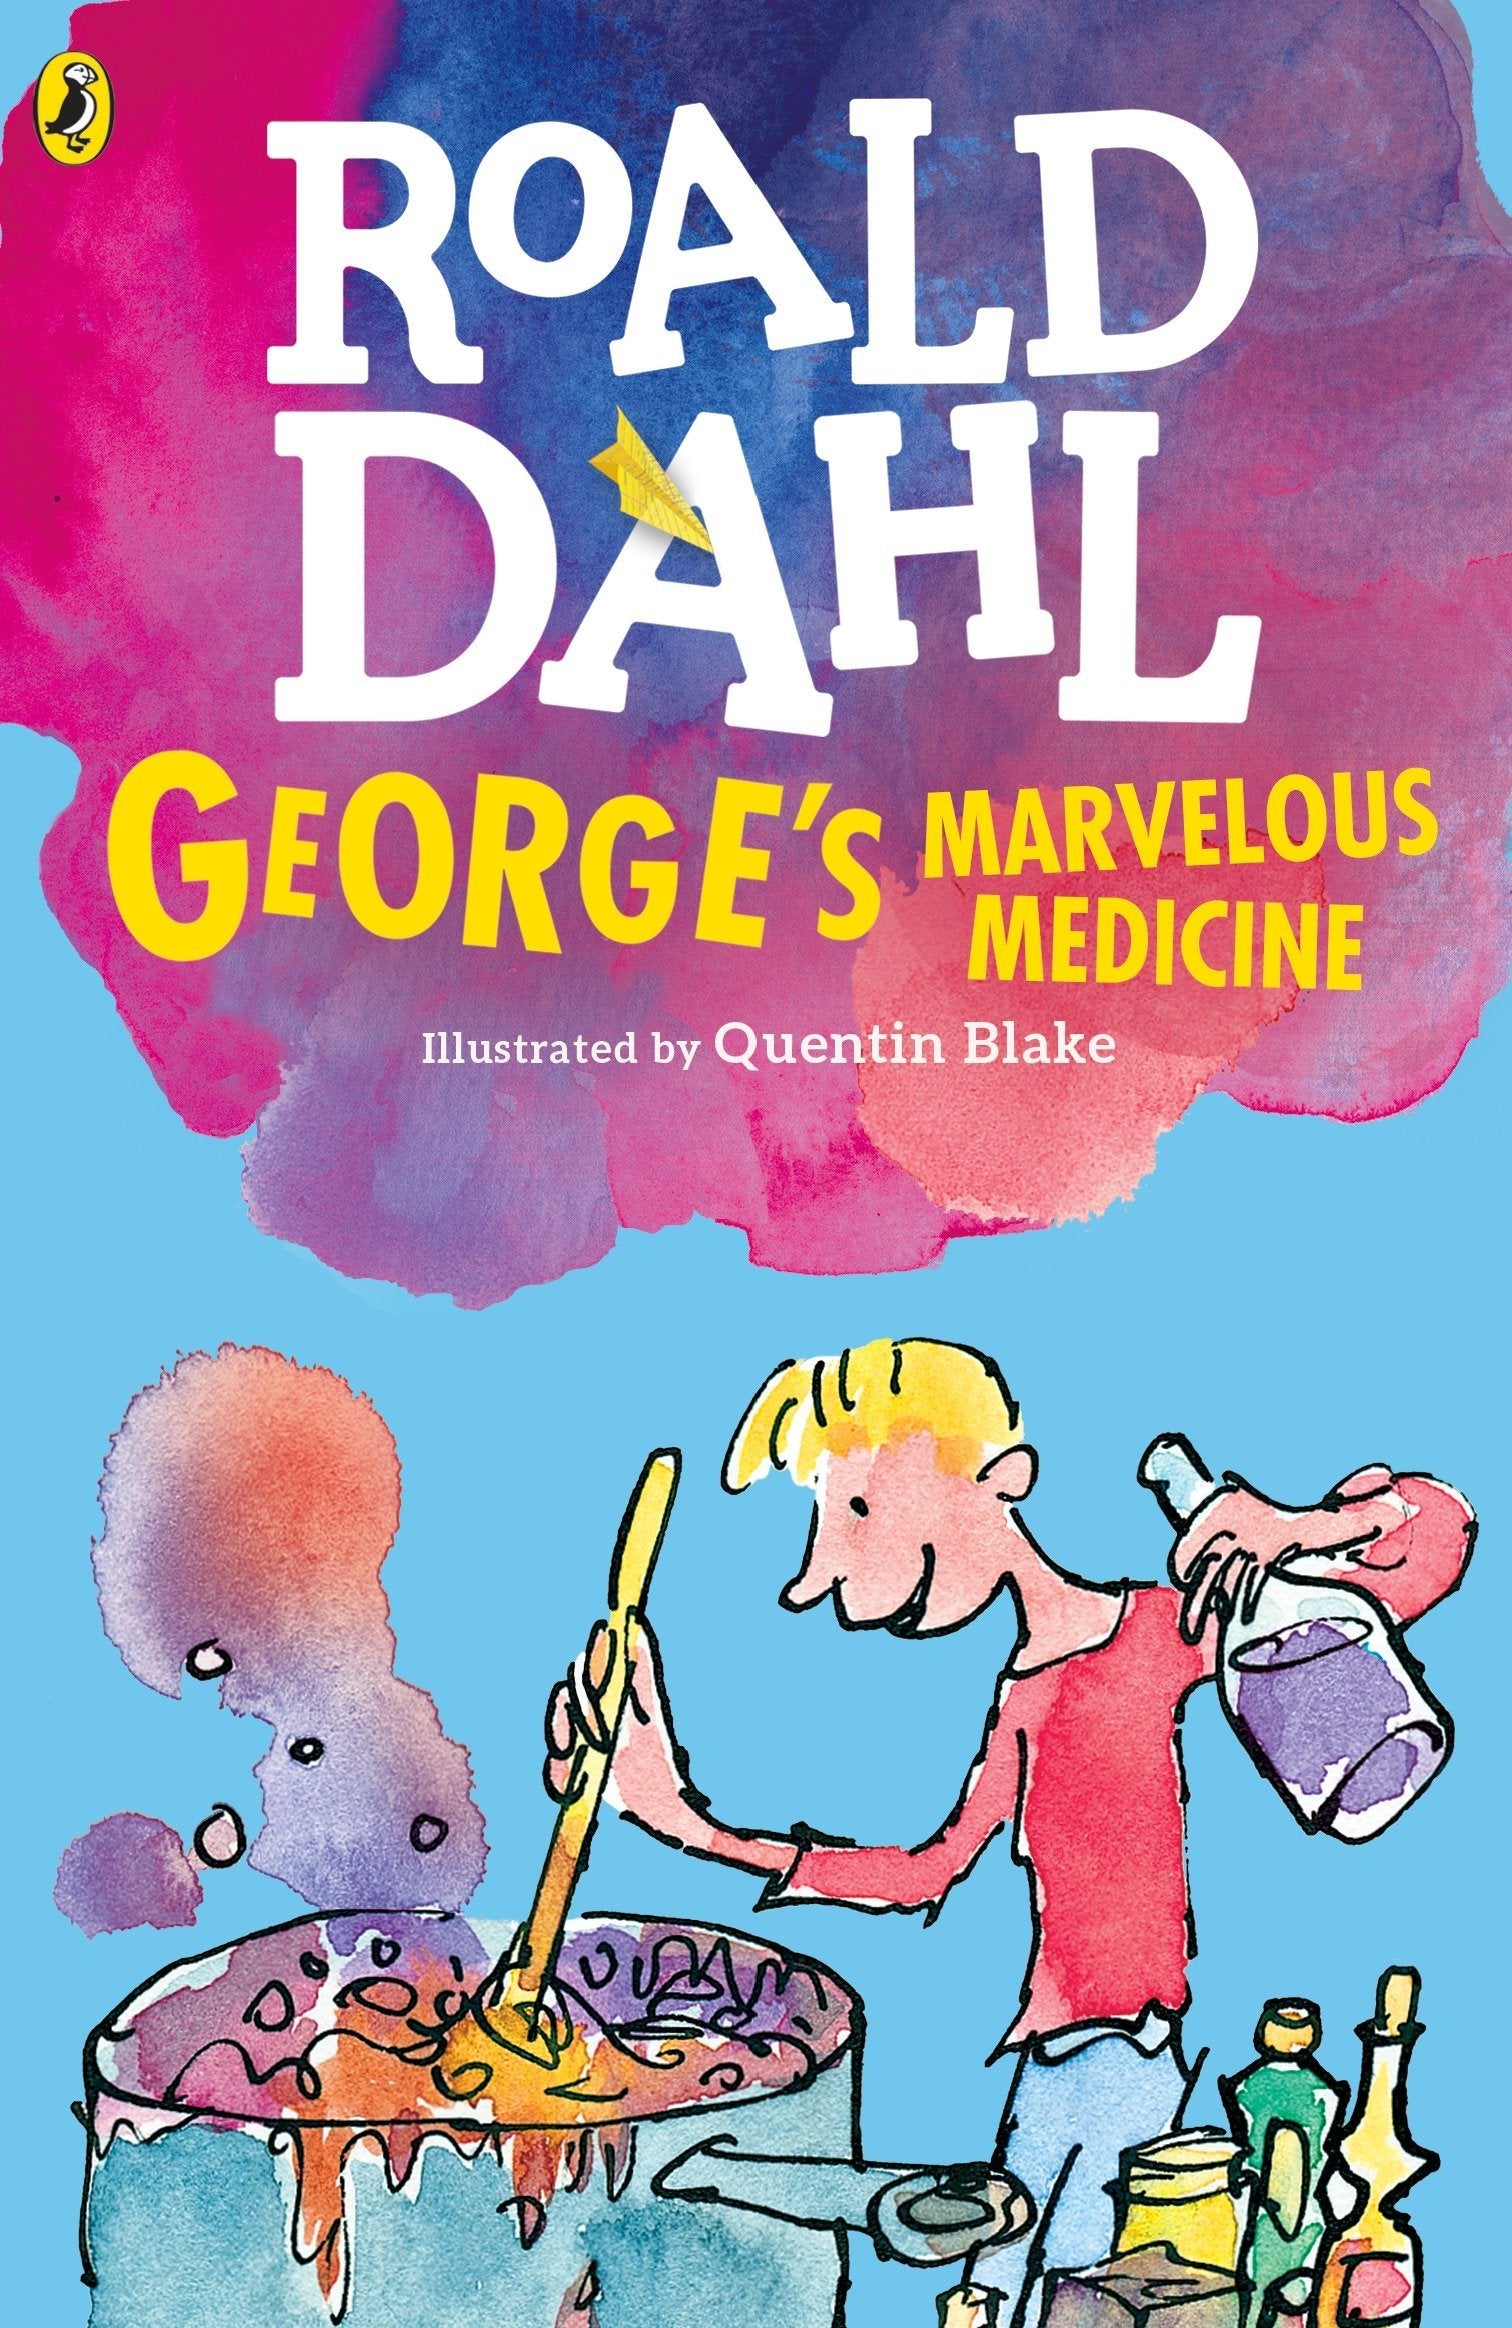 George's Marvellous Medicine Roald Dahl